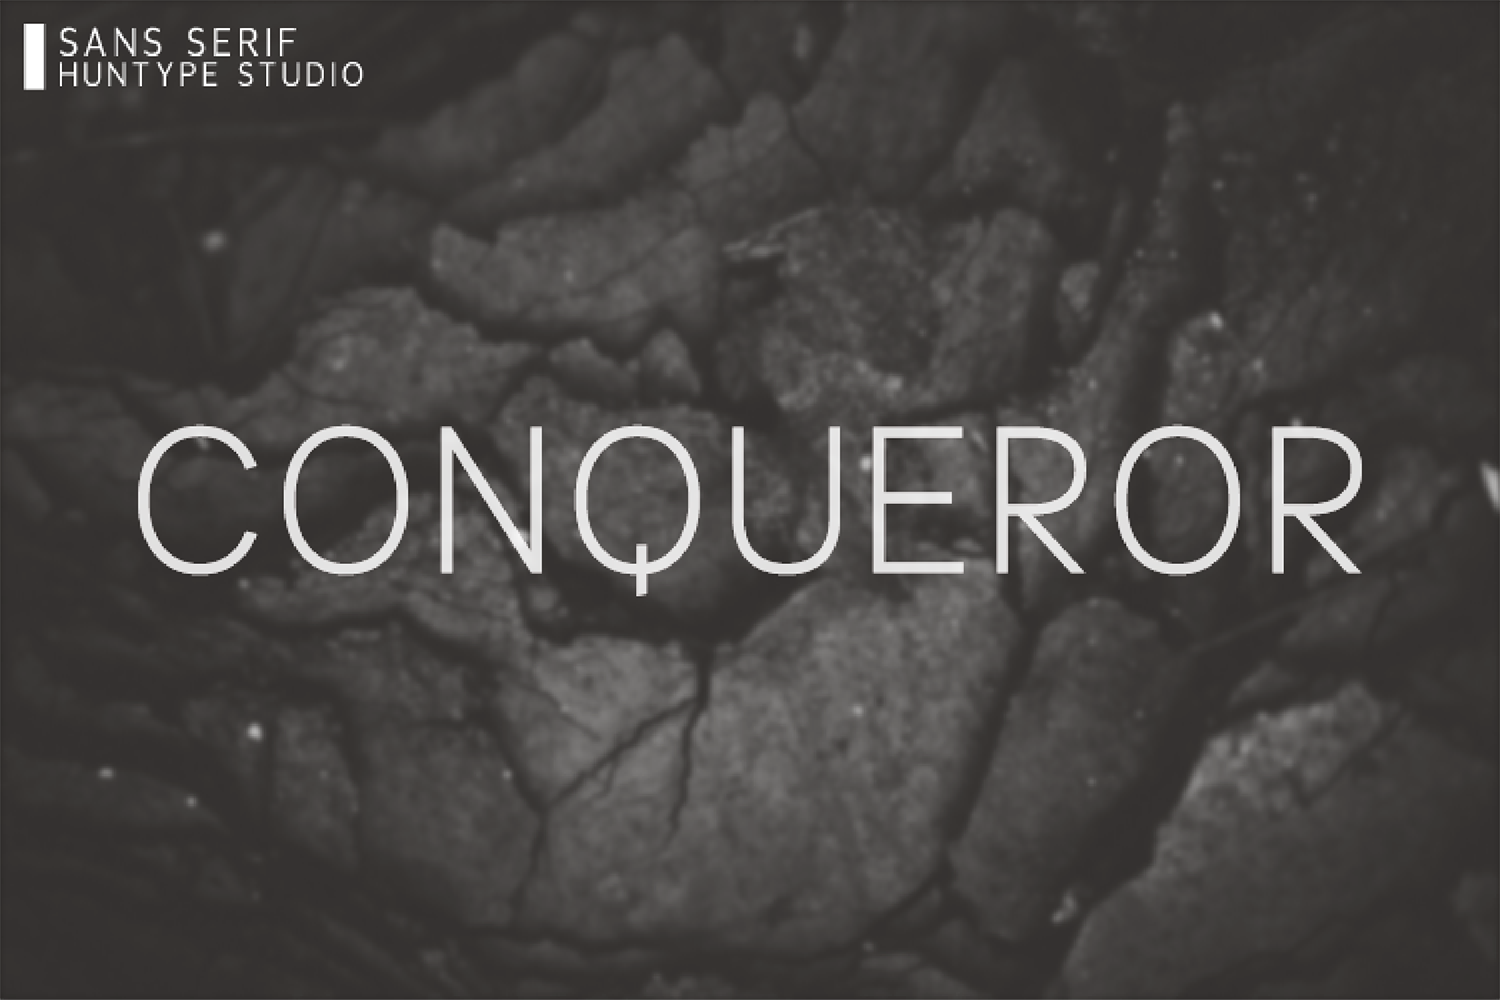 Conqueror Free Font